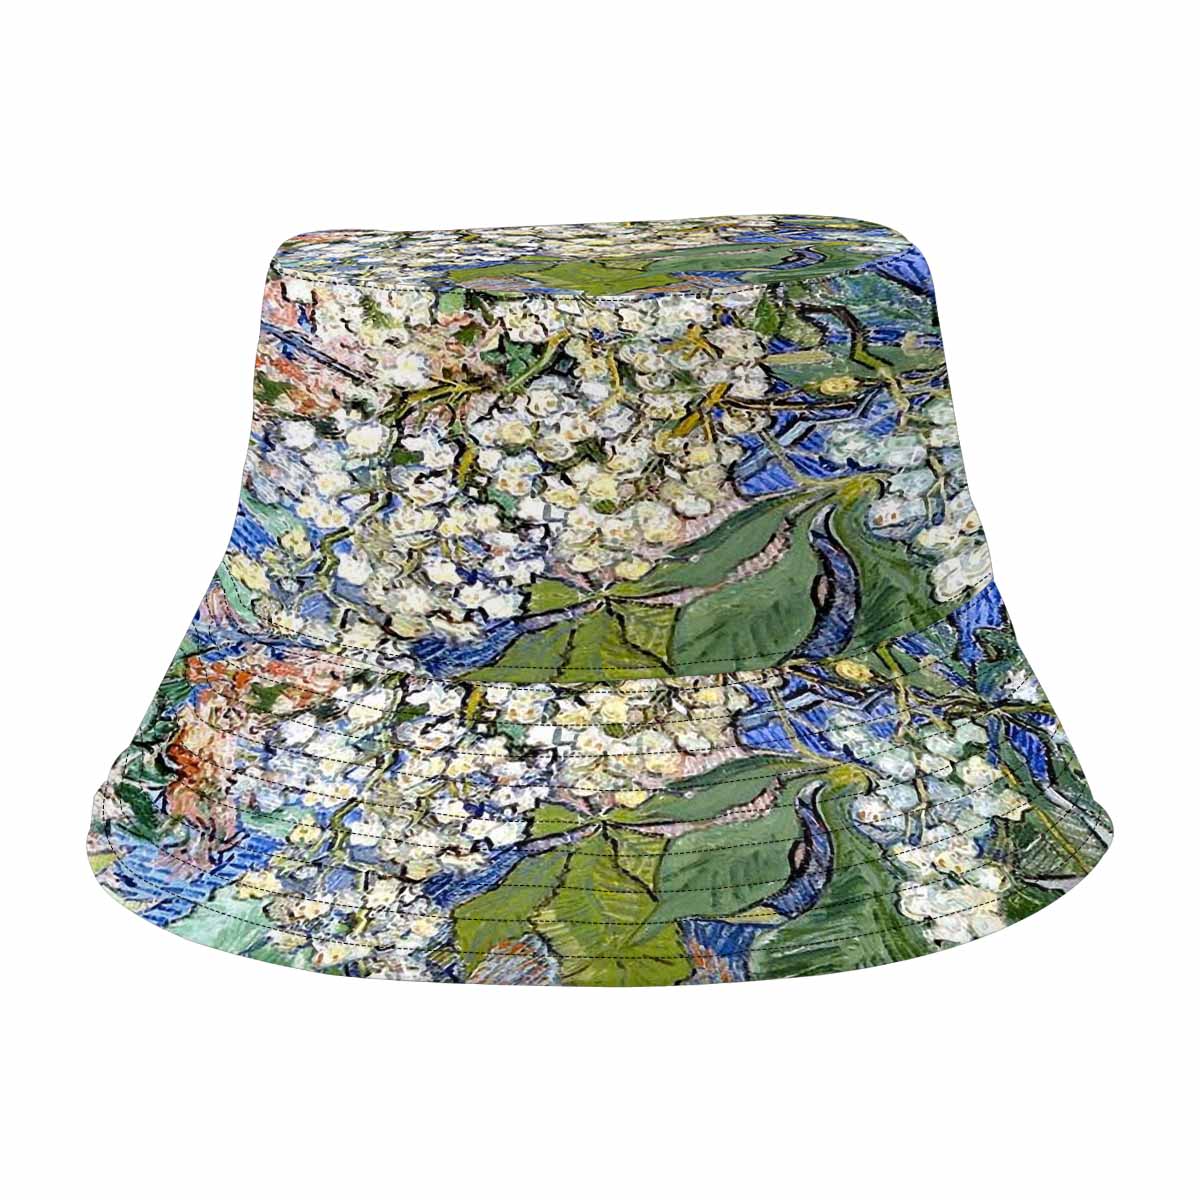 Vintage floral unisex bucket boonie Hat, outdoors hat, Design 04